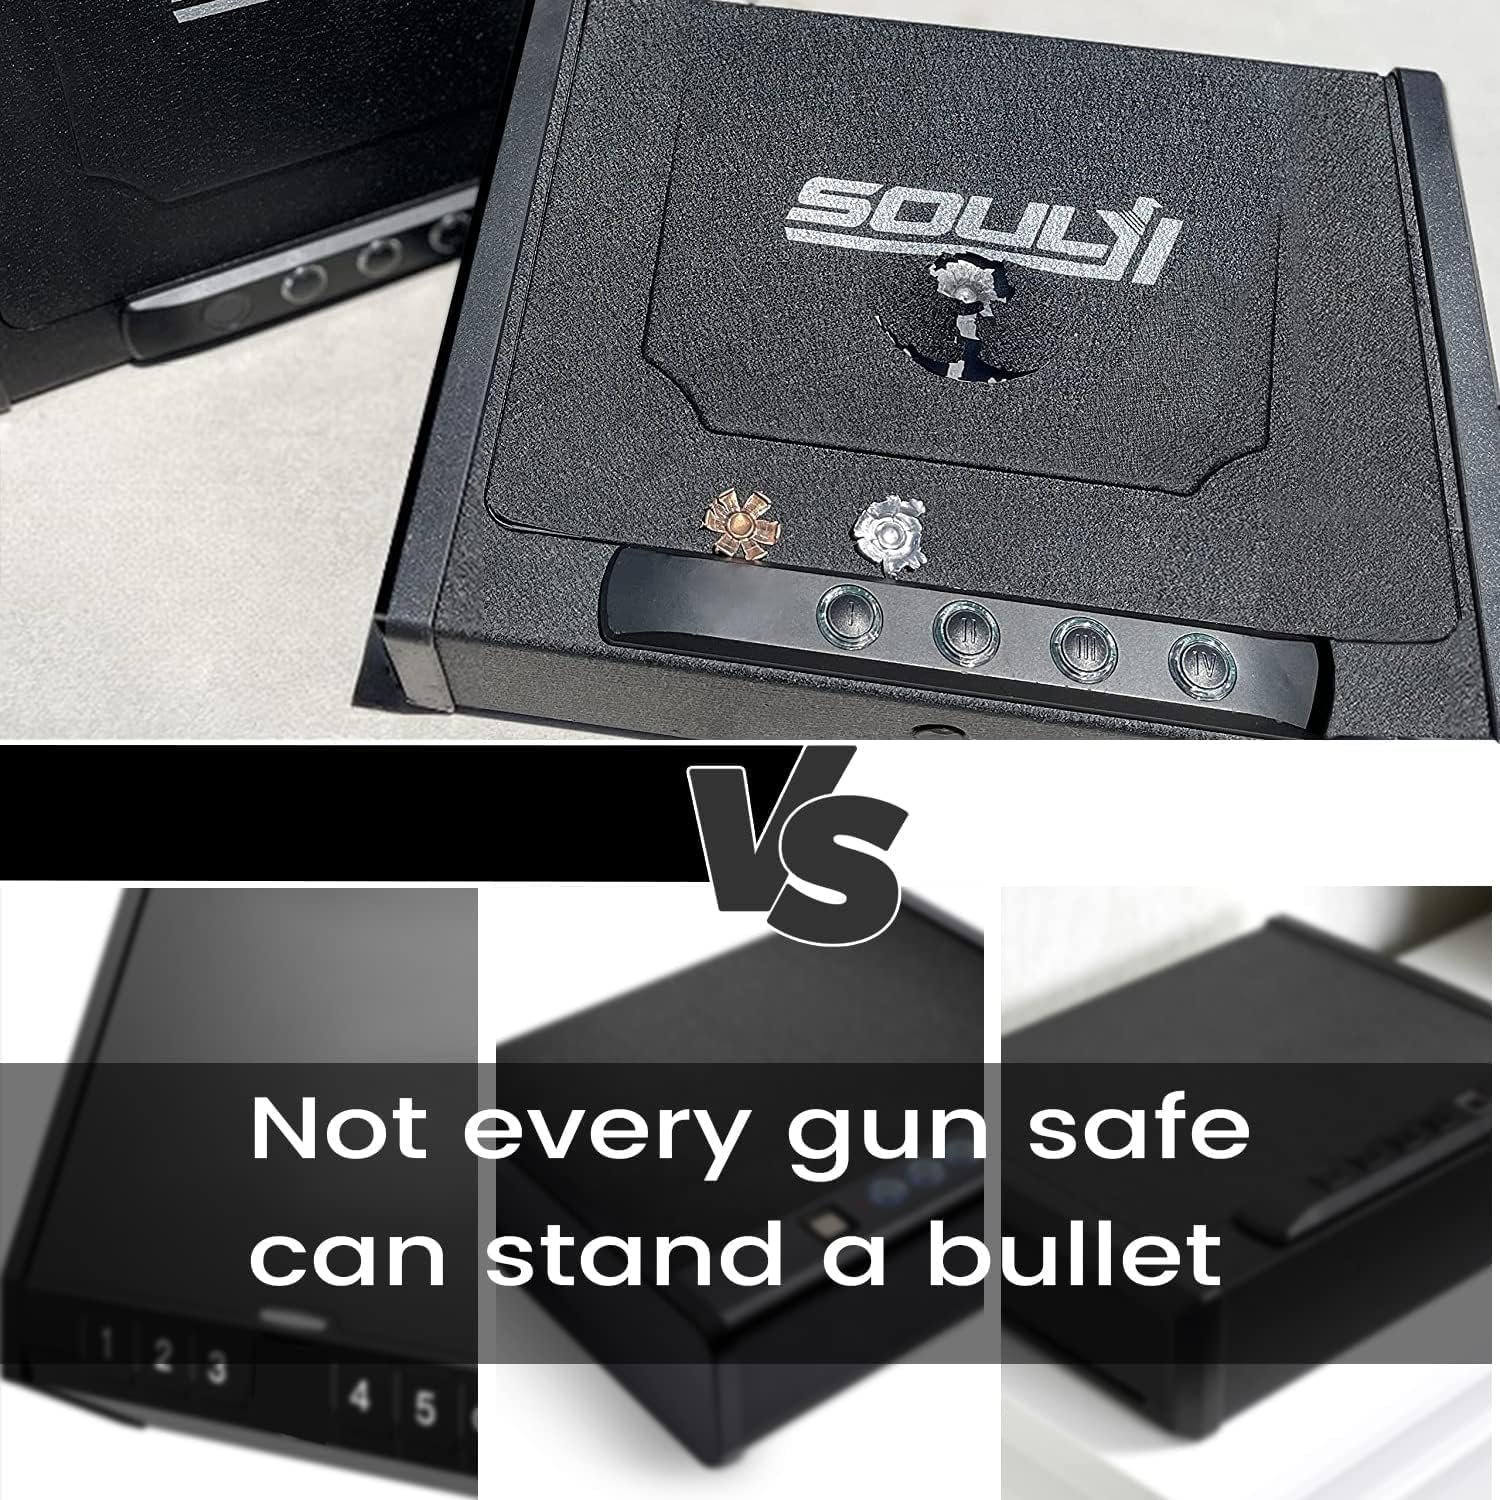 SOULYI Fingerprint Gun Safe Review